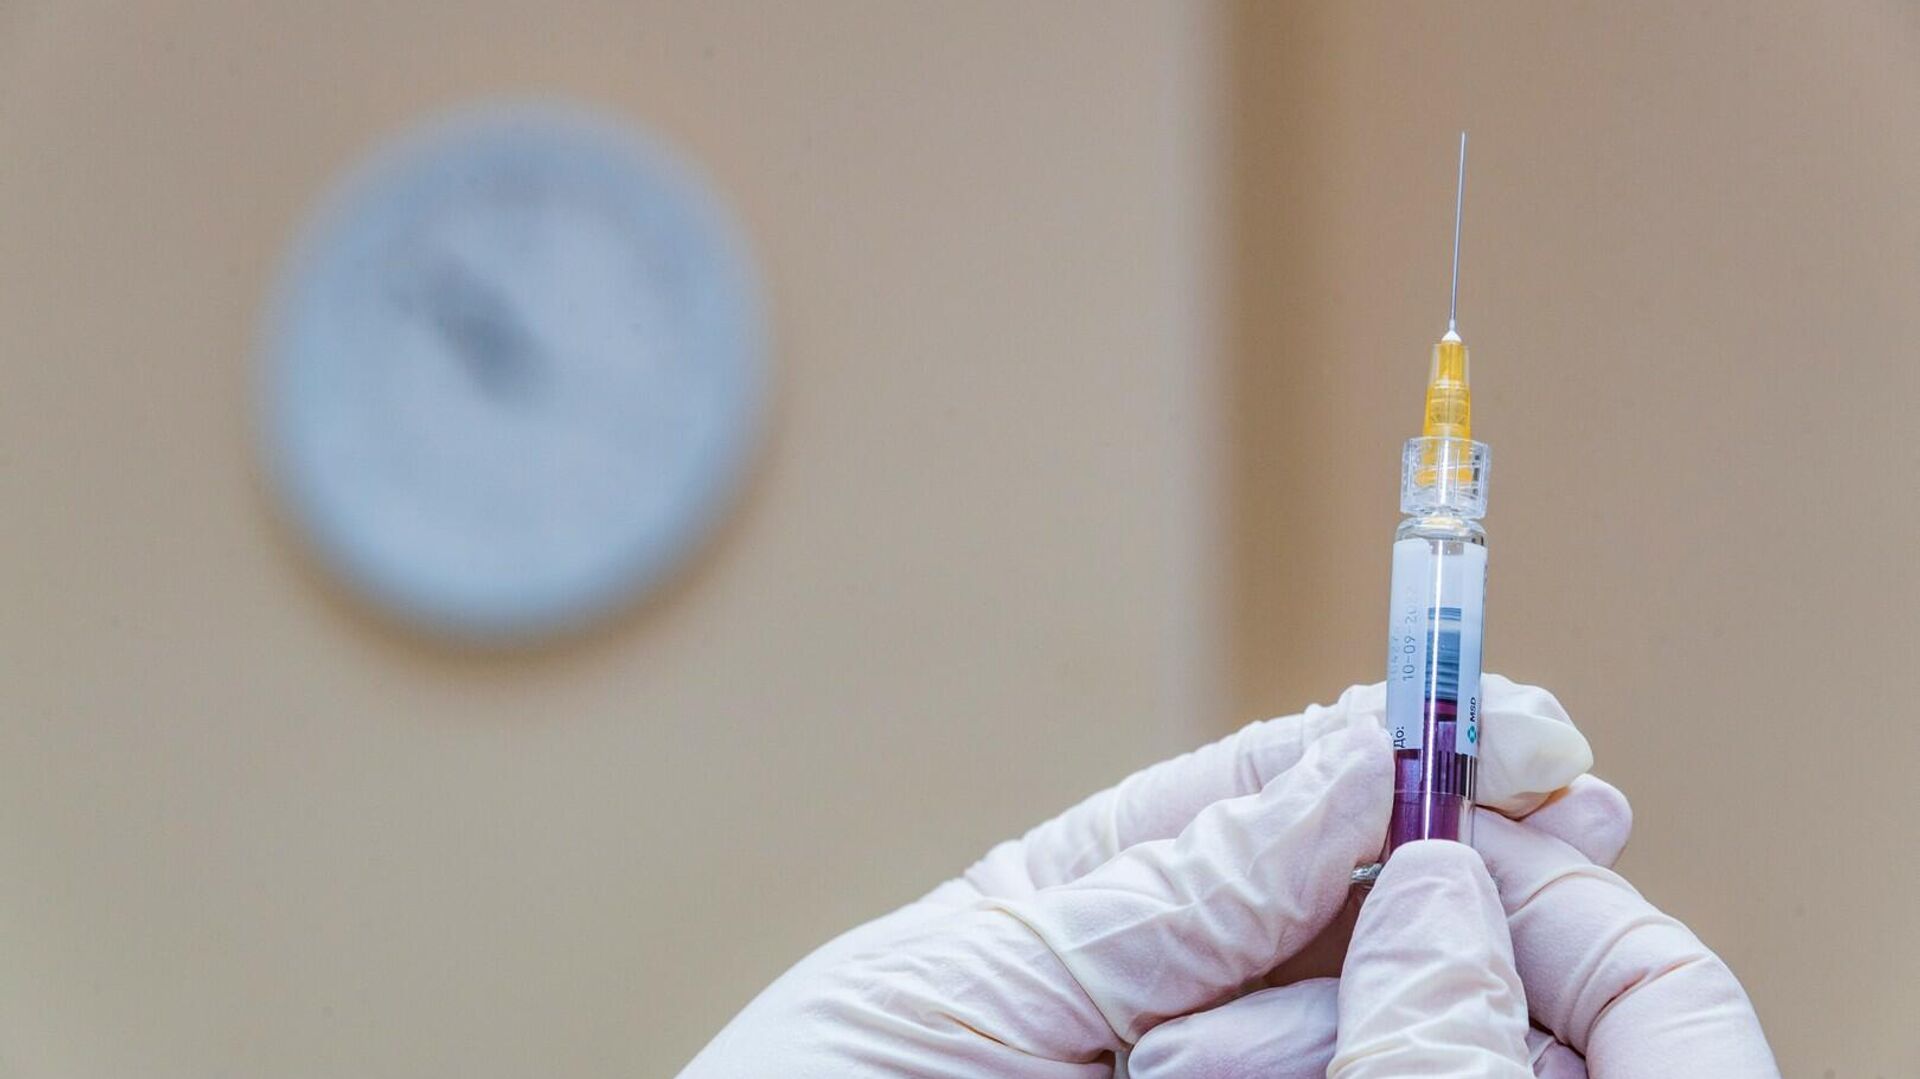 Hpv vakcina quebec. ANTSZ - Kérdések és válaszok a HPV elleni védőoltásról